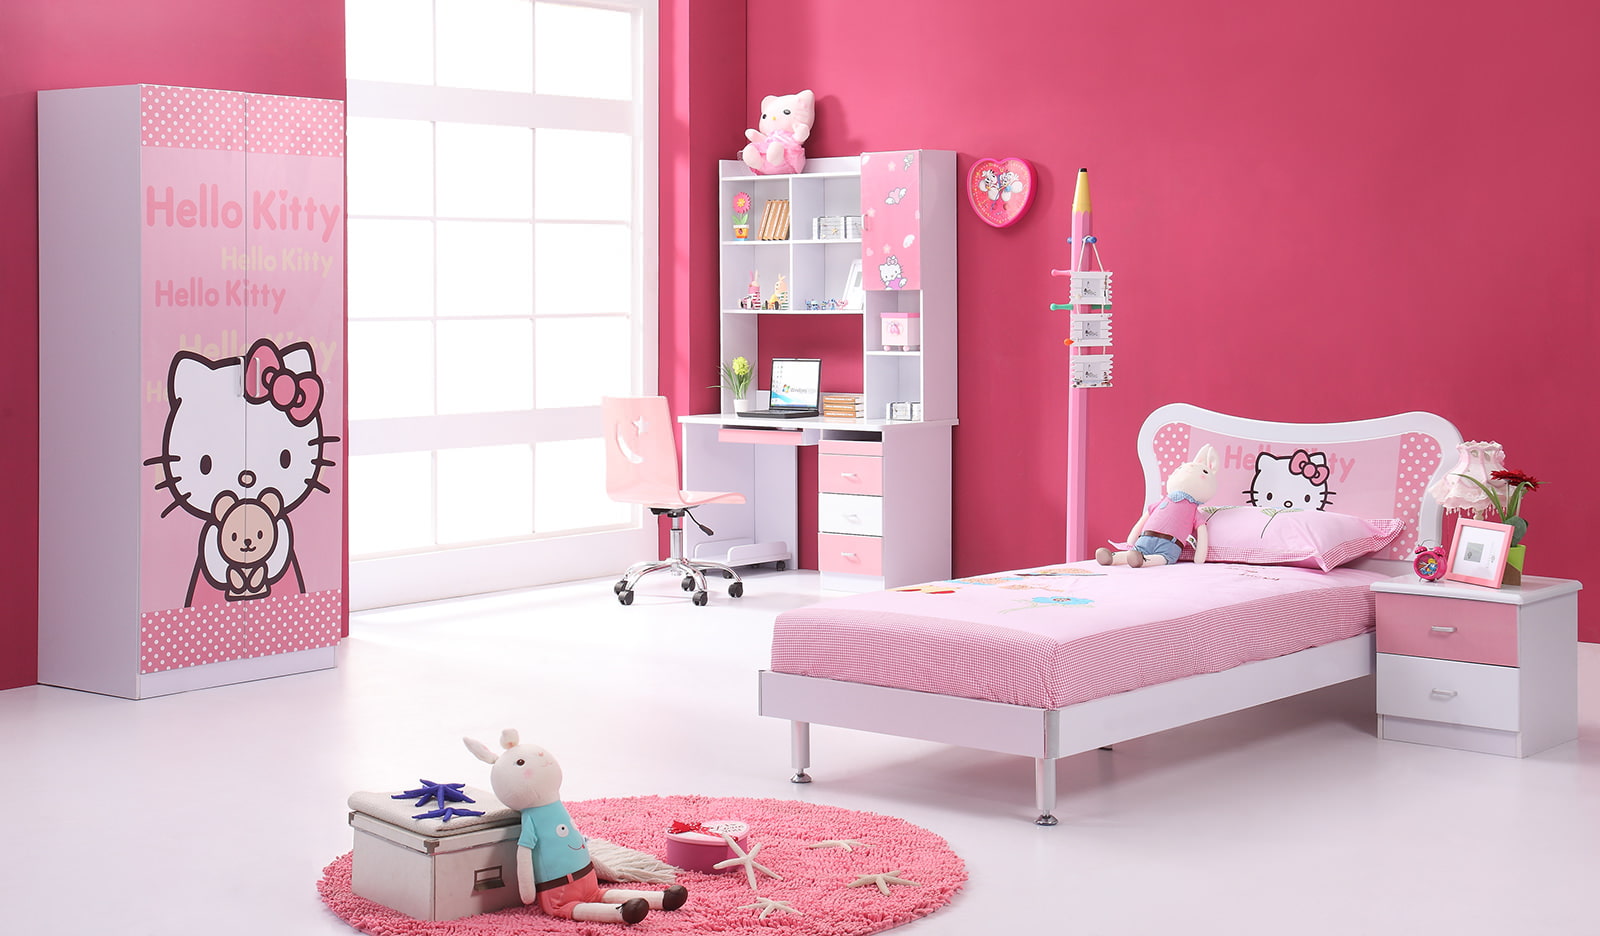 børnehave i lyserøde farver